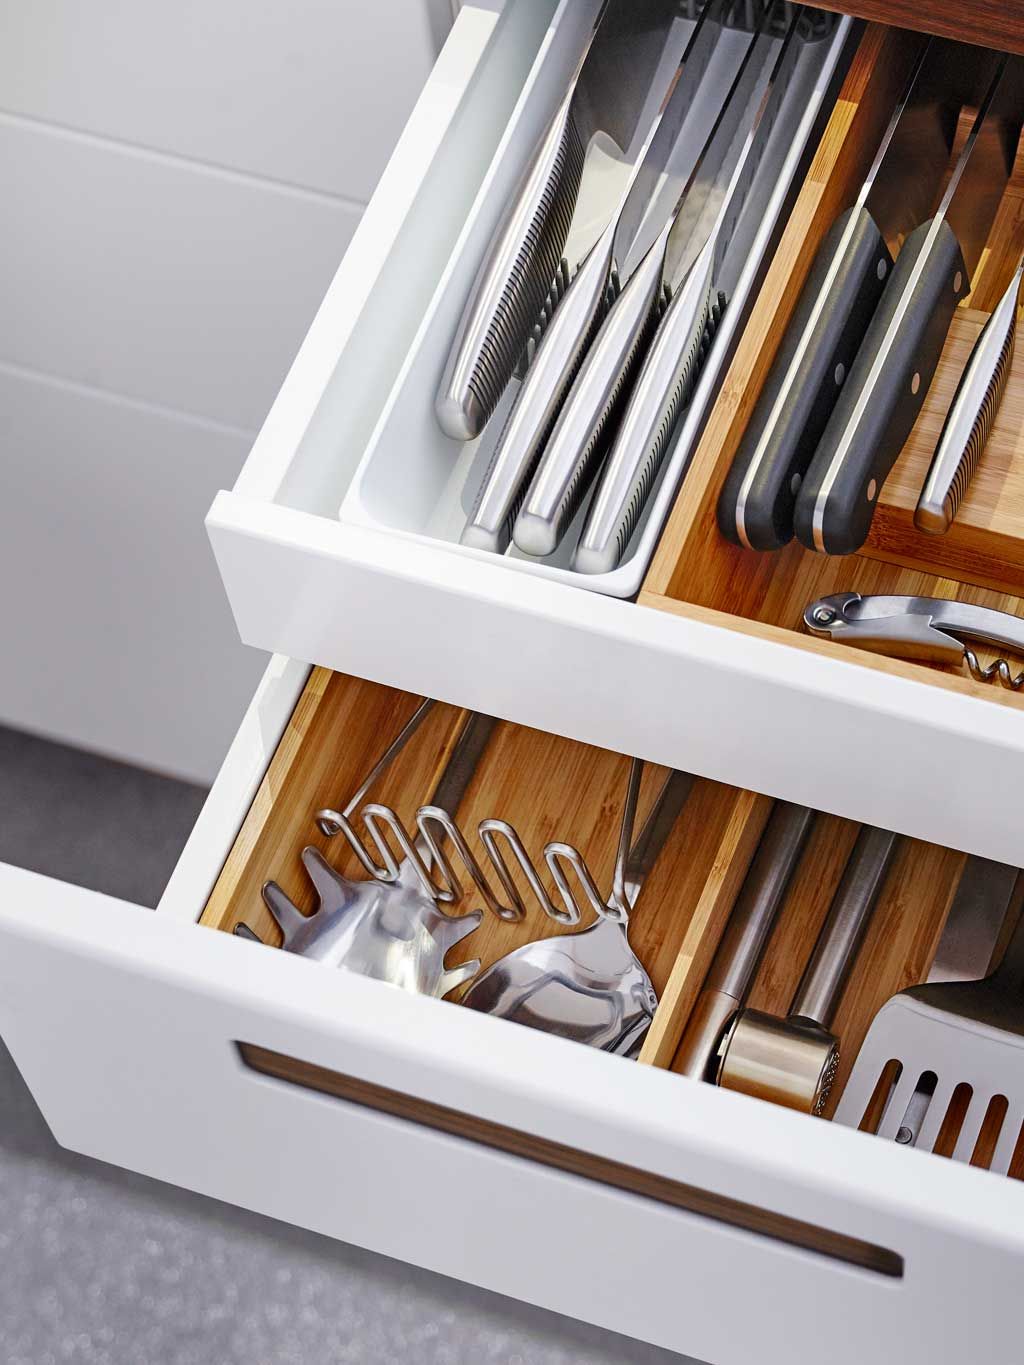 Los utensilios de cocina que debes evitar guardar en los cajones